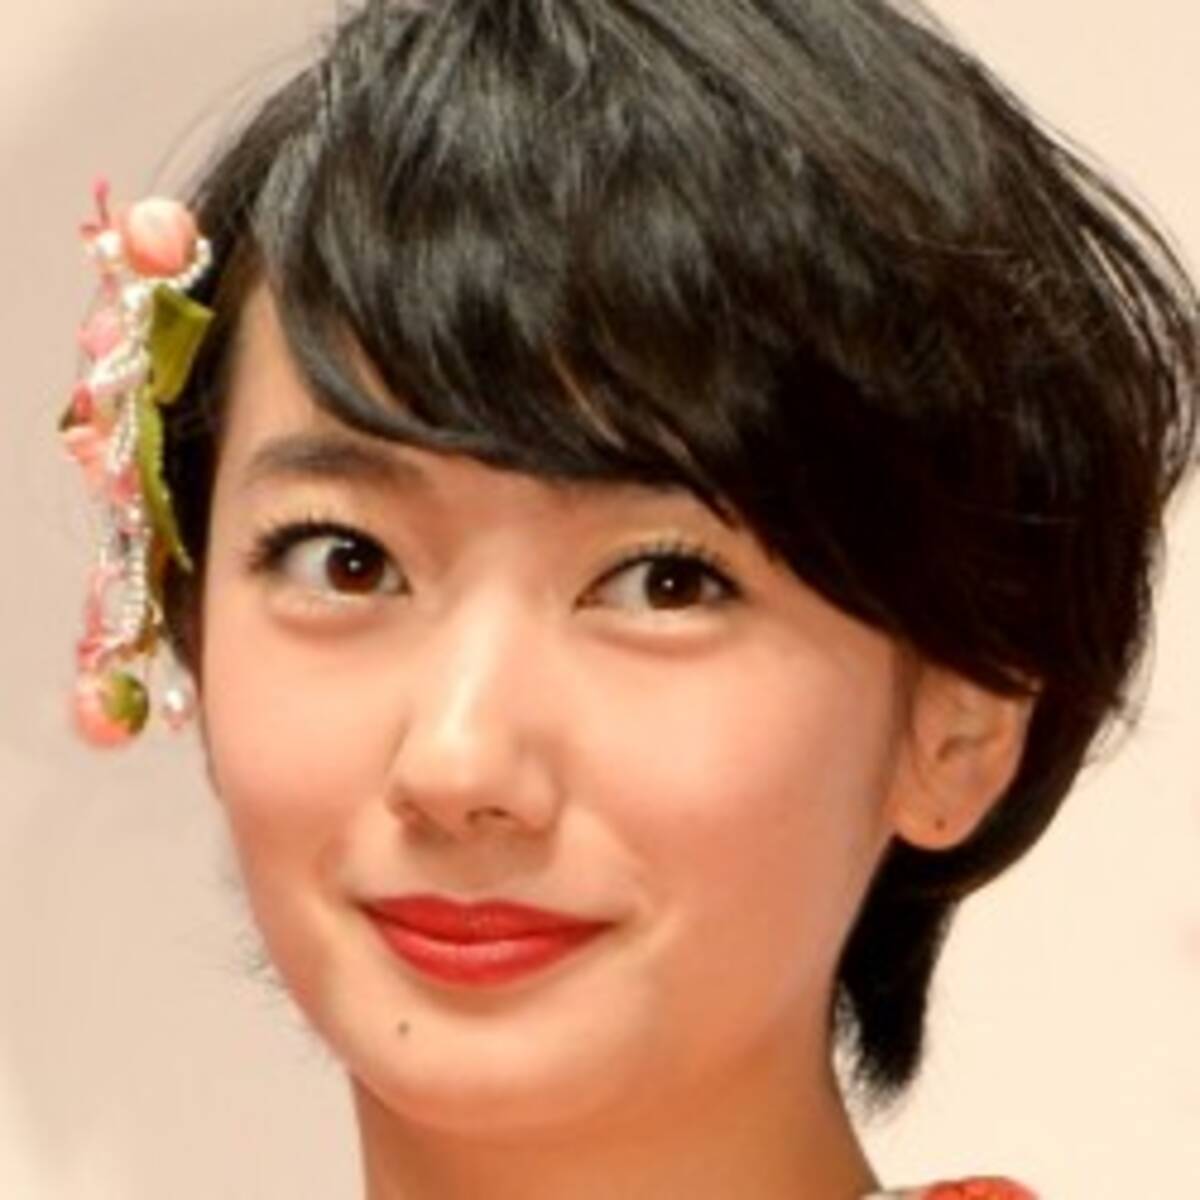 夏目雅子の再来 9月 の朝ドラヒロイン 波瑠をお披露目したnhkの鼻息 15年3月18日 エキサイトニュース